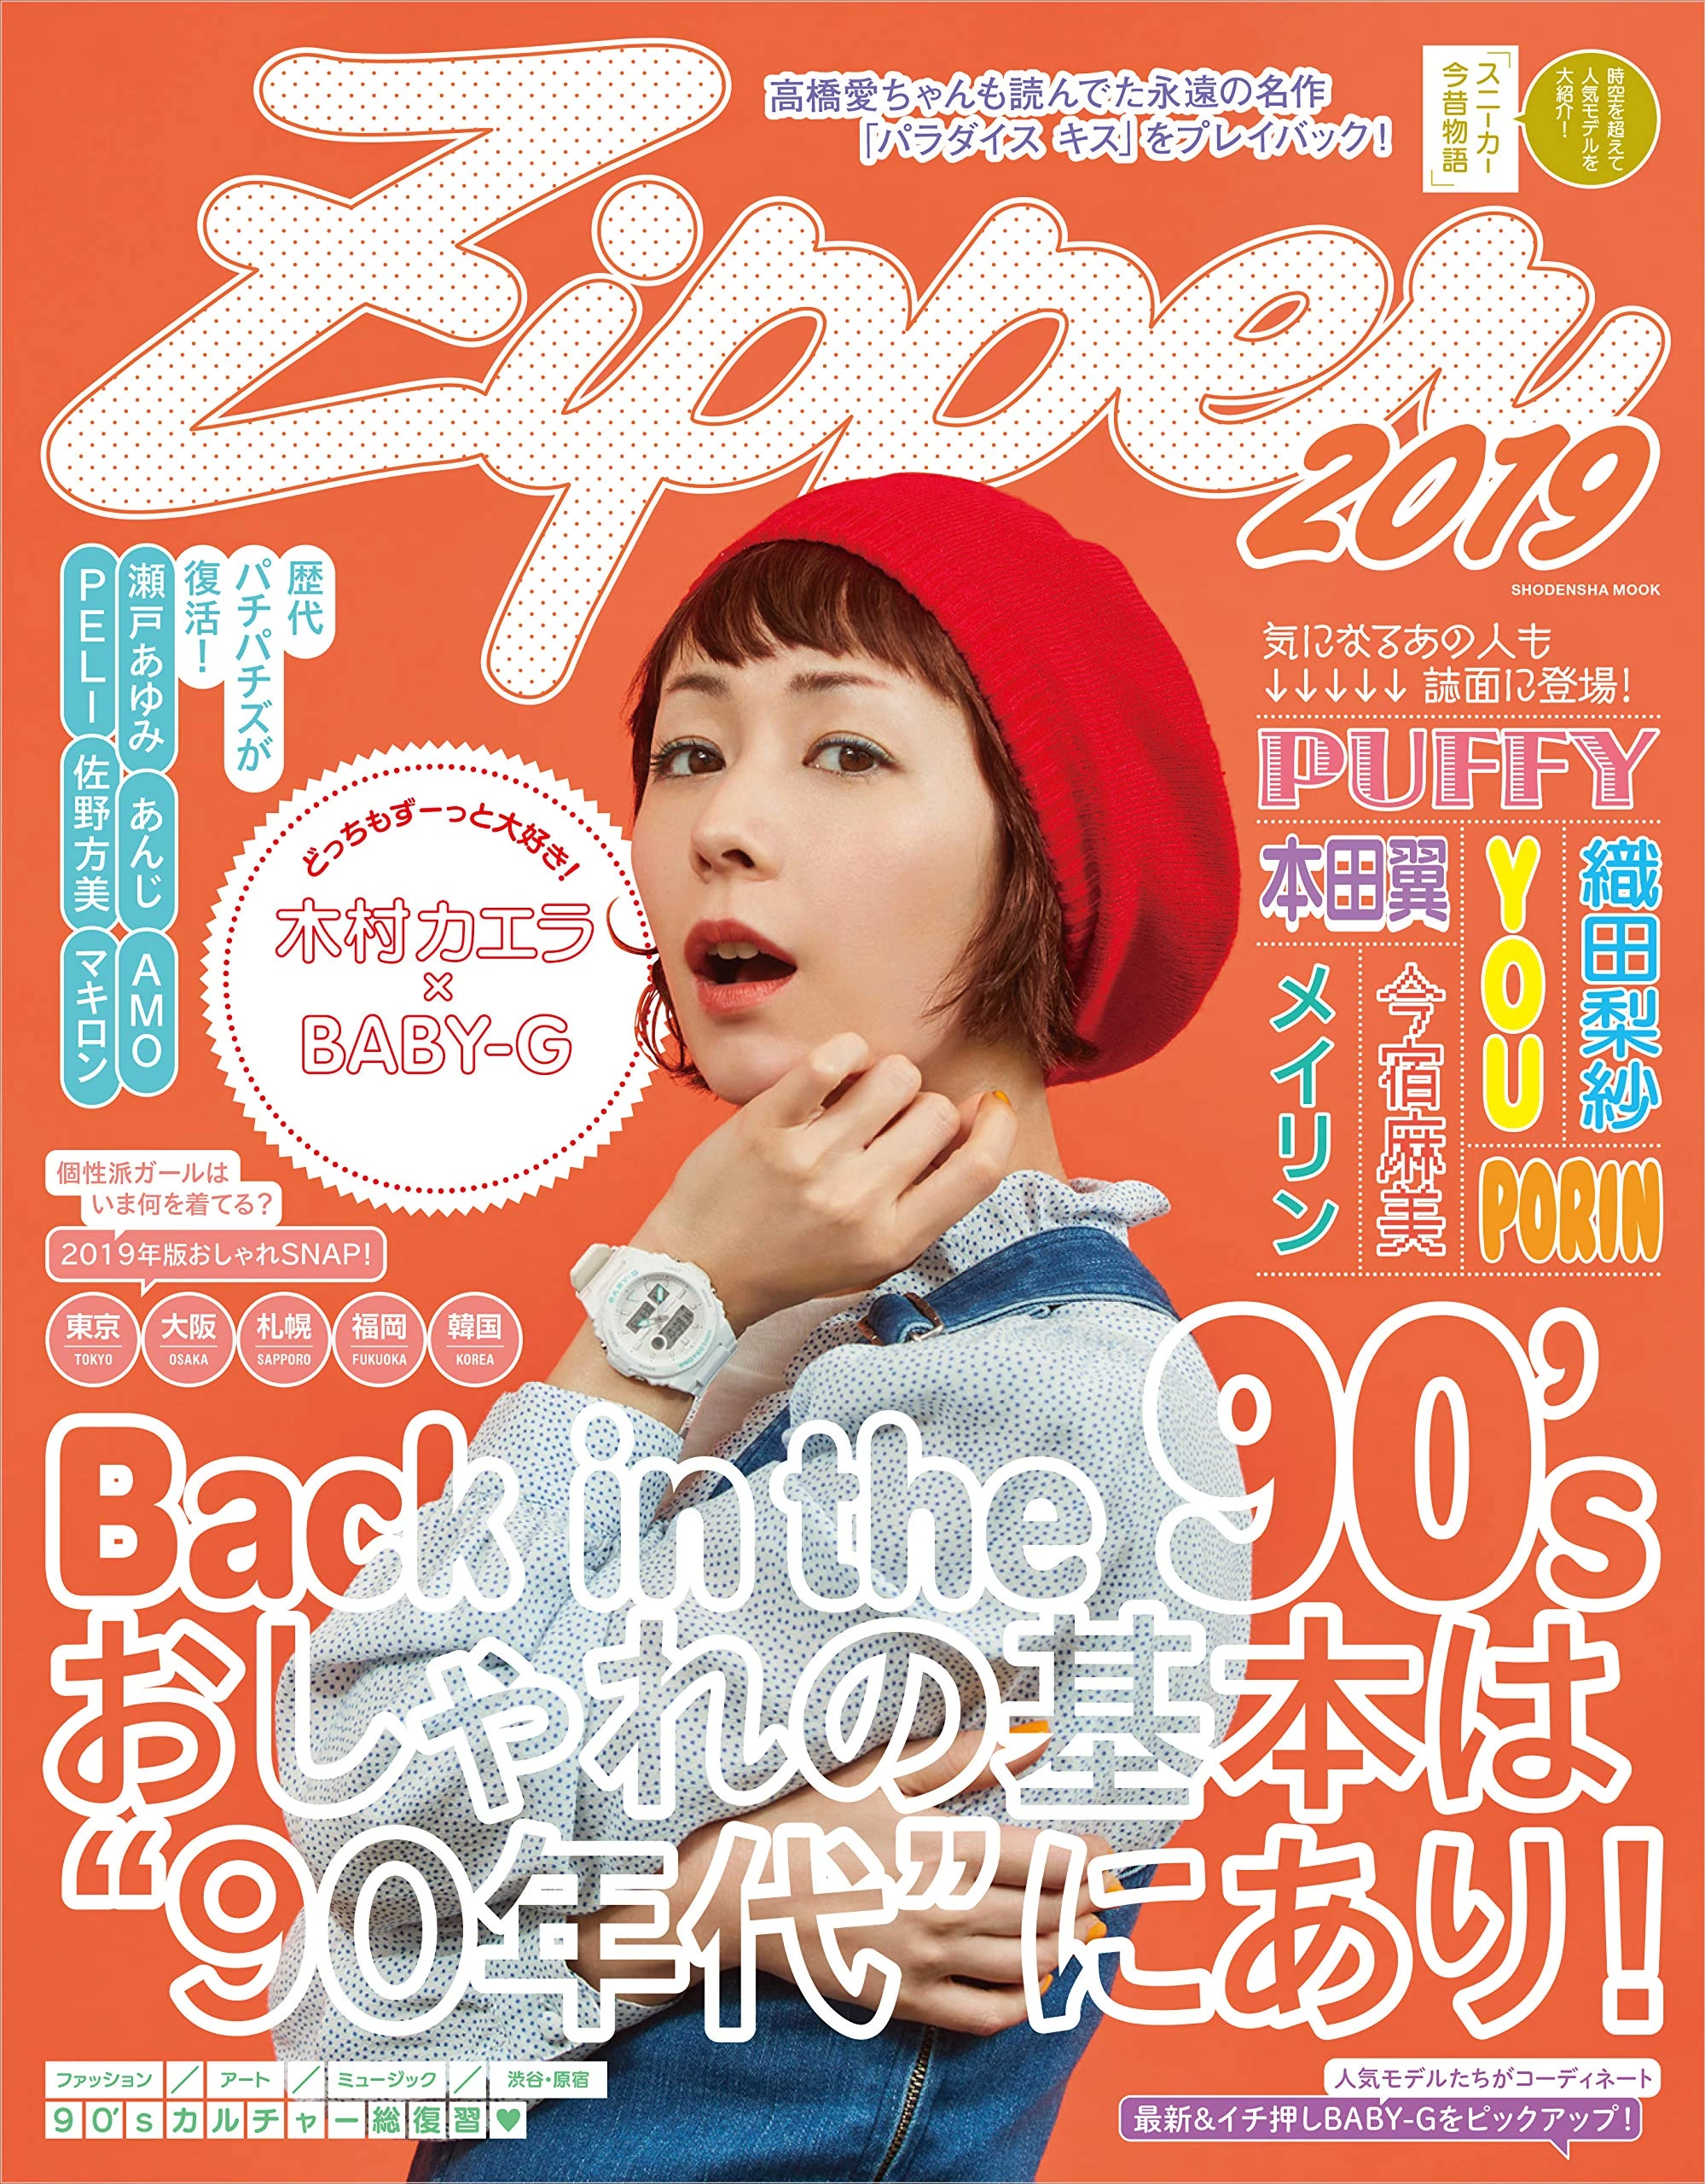 雑誌『Zipper』90年代をテーマに1号限りで復活 表紙に木村カエラ - KAI